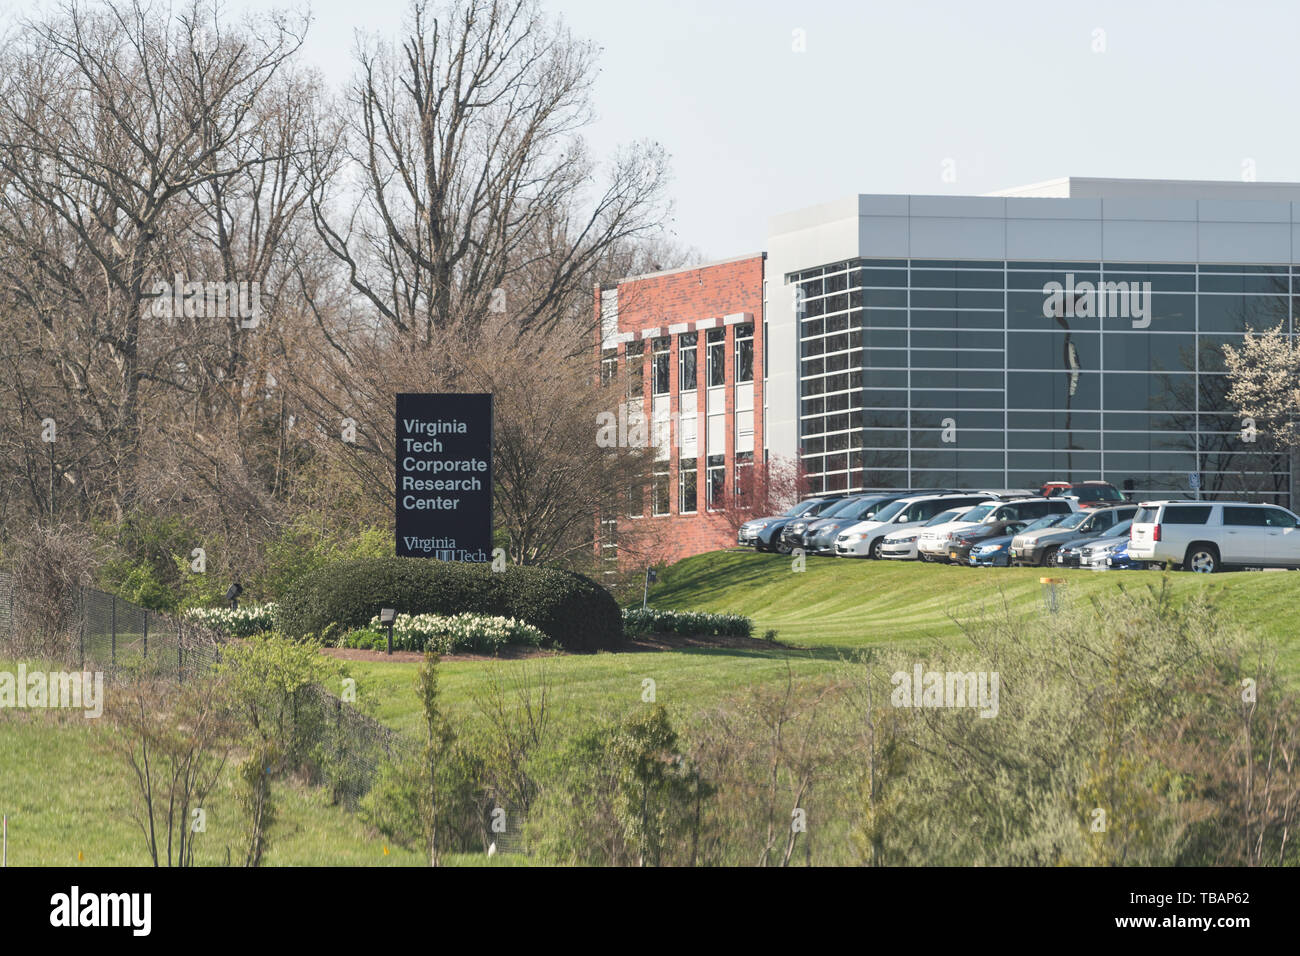 Blacksburg, Stati Uniti d'America - 18 Aprile 2018: Storico Virginia Polytechnic Institute and State University College campus con segno per la ricerca aziendale ce Foto Stock